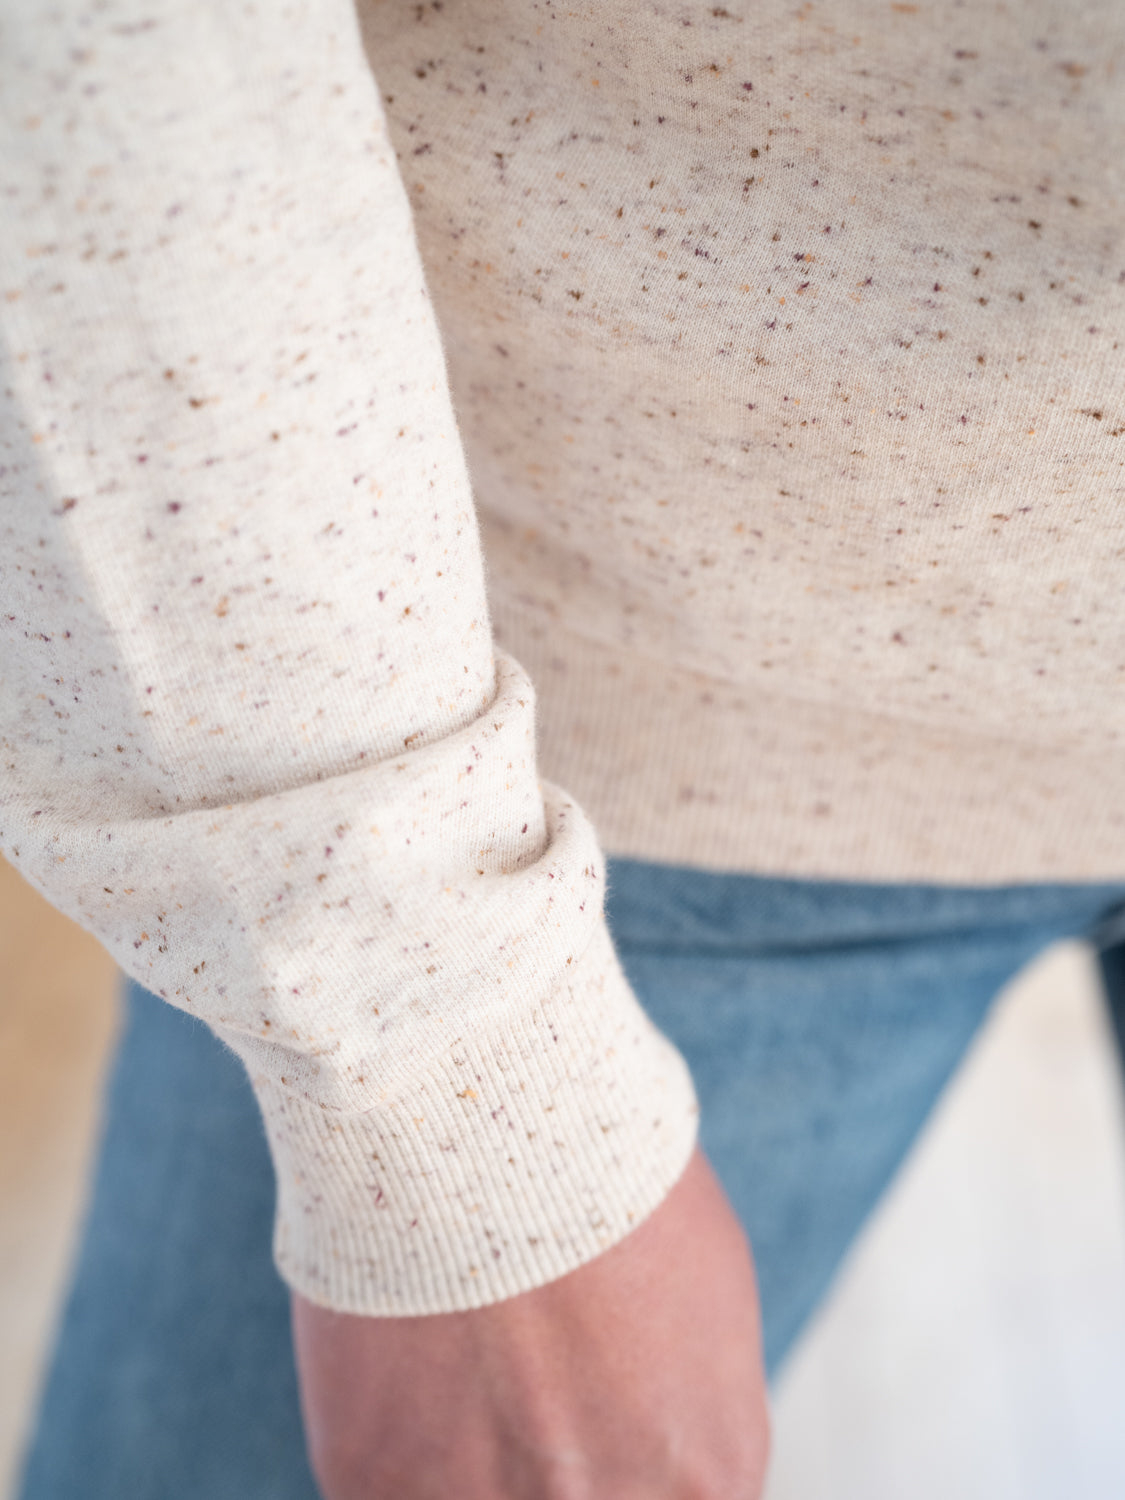 Nachhaltiger Fair Fashion Frauen Sweater aus 100% Biobaumwolle mit feinen, bunten highlights von FUXBAU in GOTS zertifizierter Biobaumwolle.